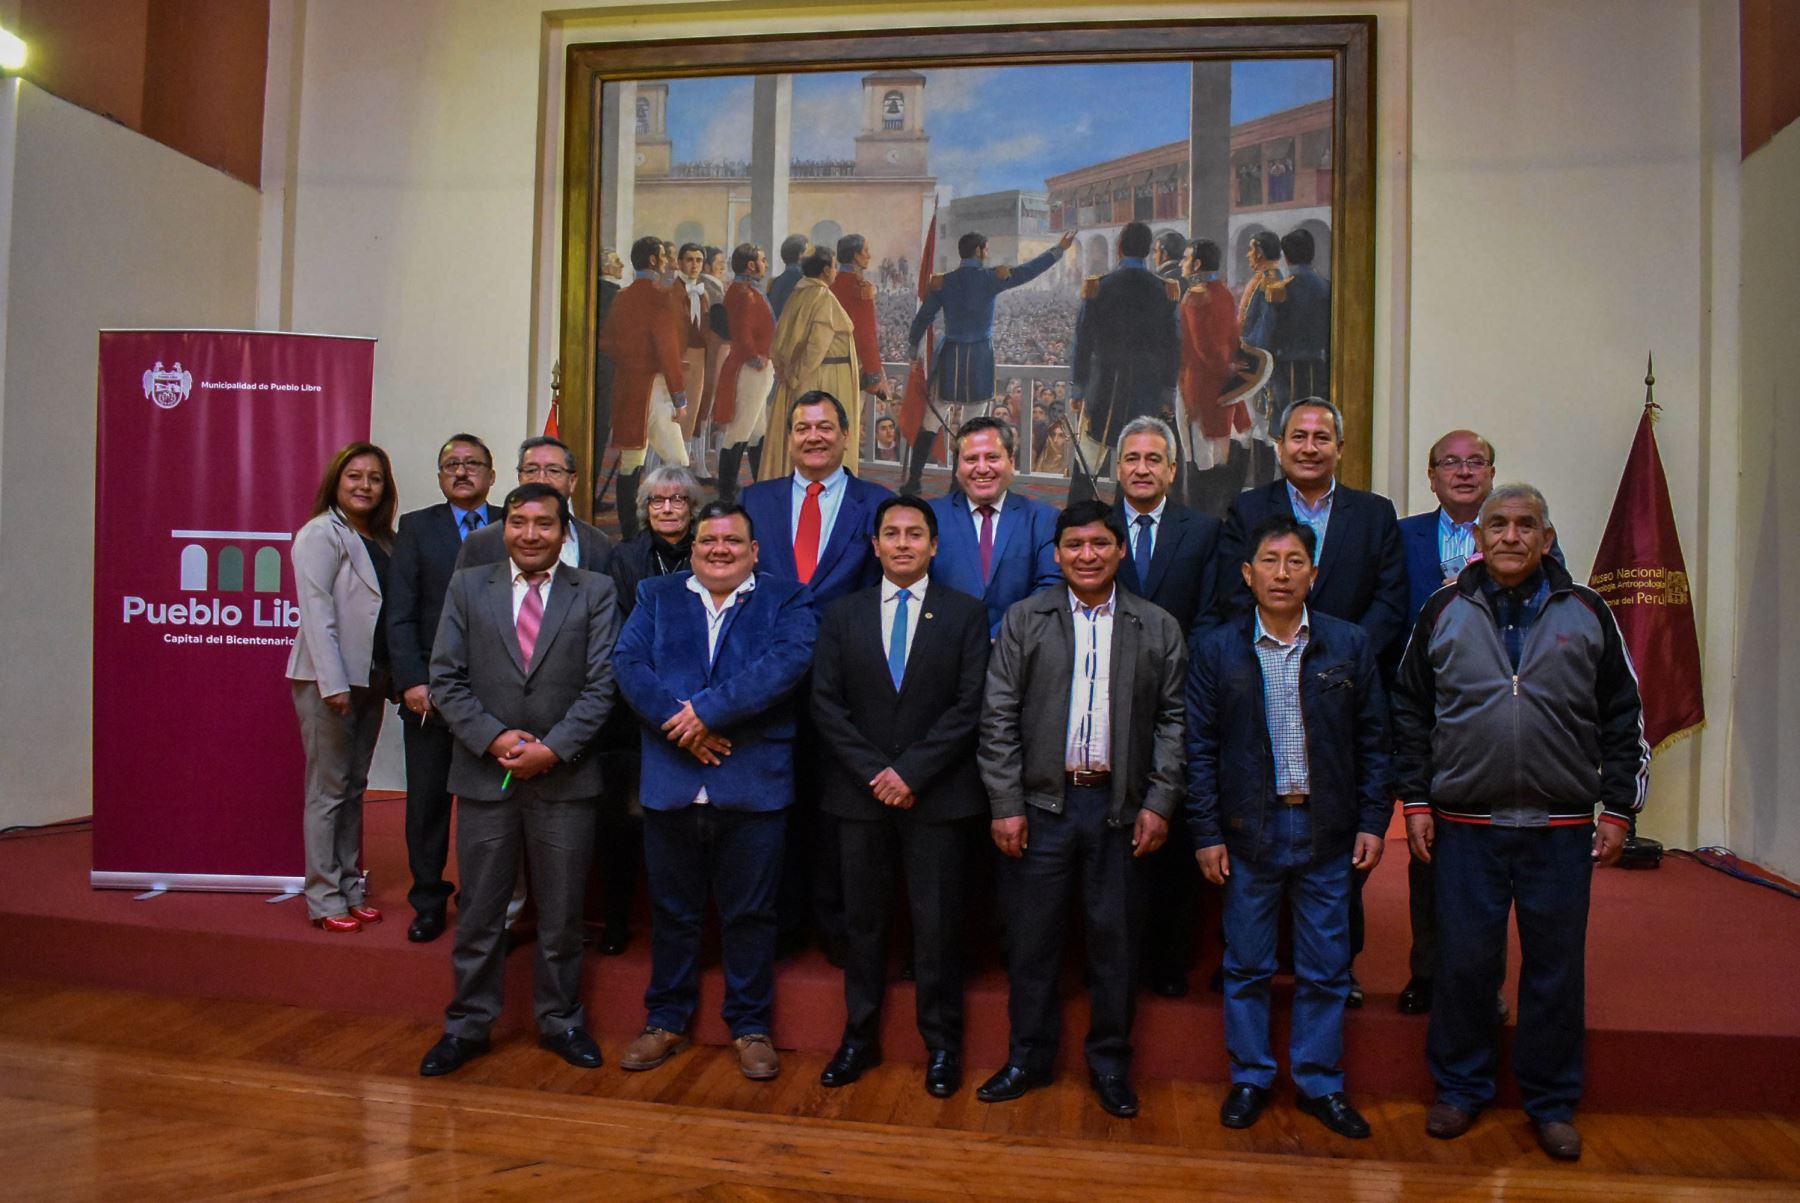 Mancomunidad de distritos relacionados con la independencia del Perú será liderada por la municipalidad de Pueblo Libre.